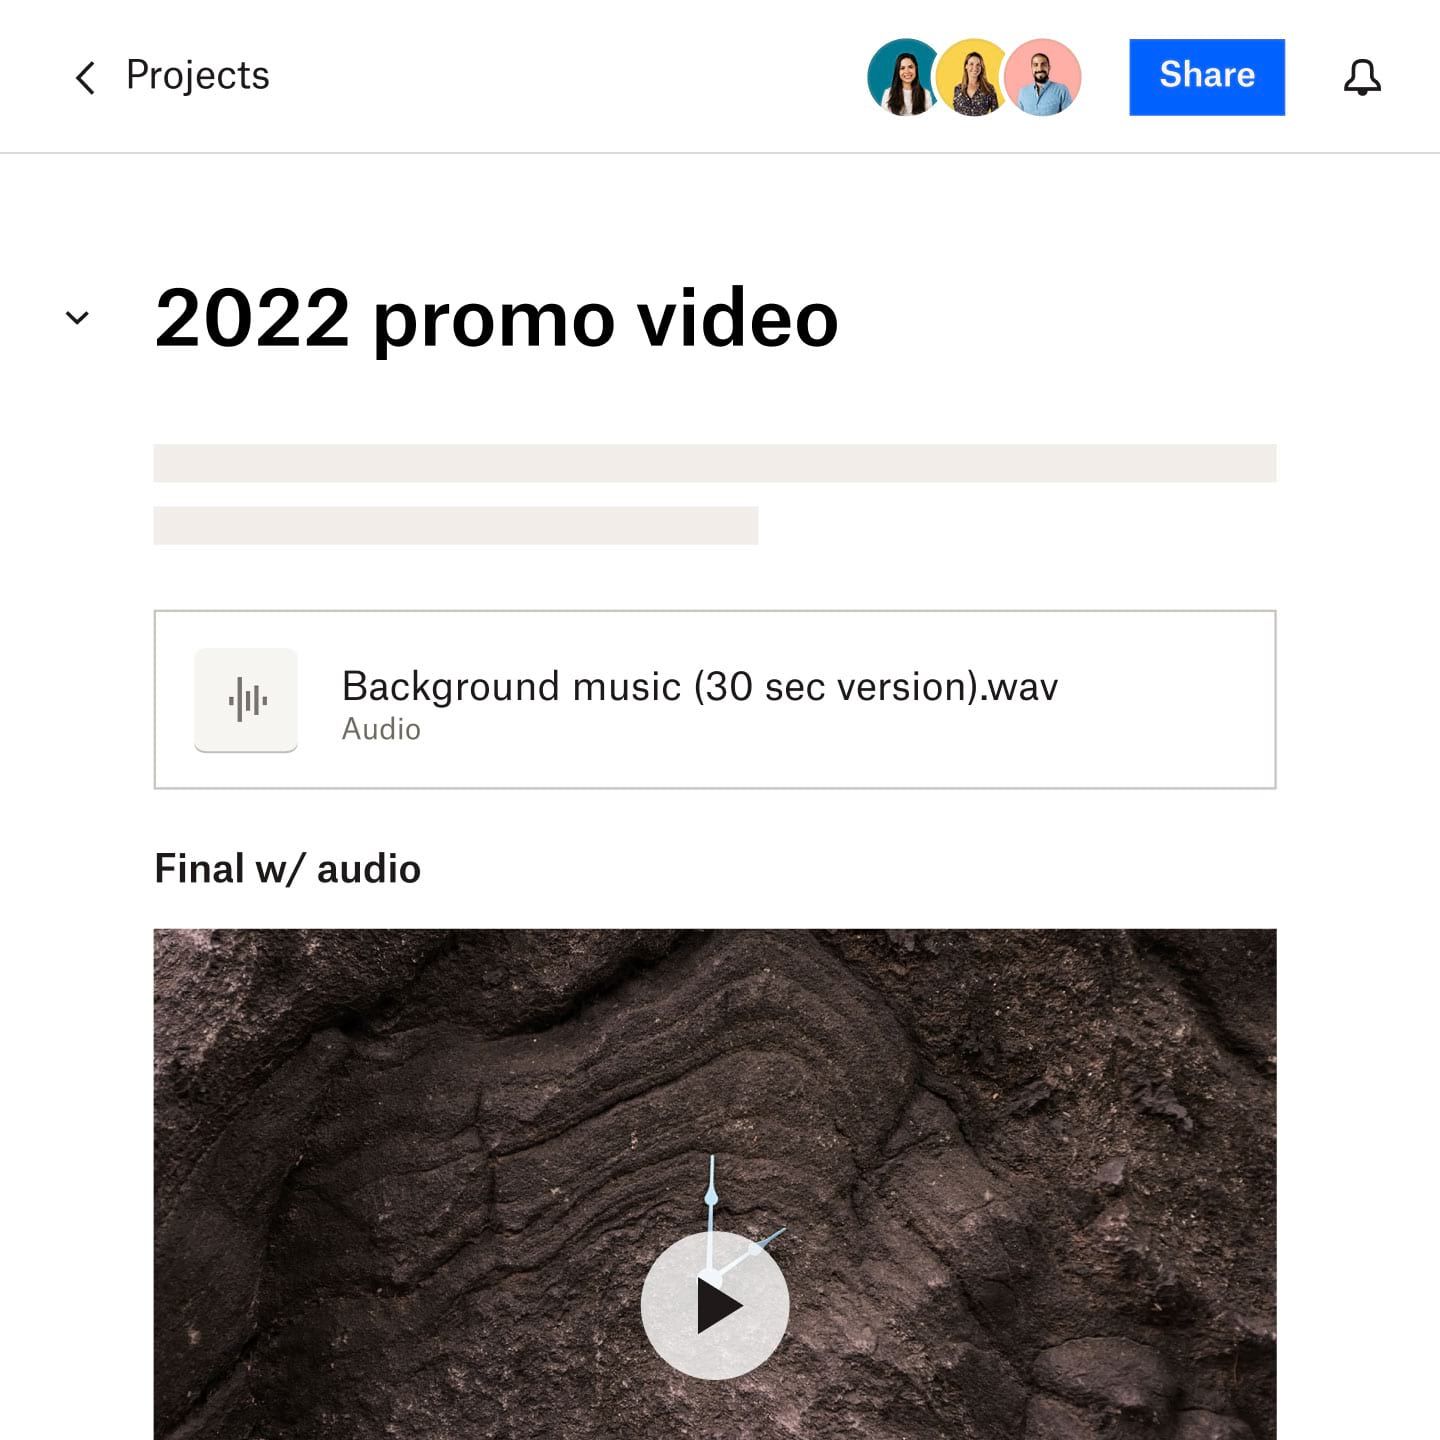 Документ Dropbox Paper с заголовком «Промо-ролик 2022 года», ссылкой на аудиофайл, используемый в видеоролике, и частичный снимок экрана готового видео